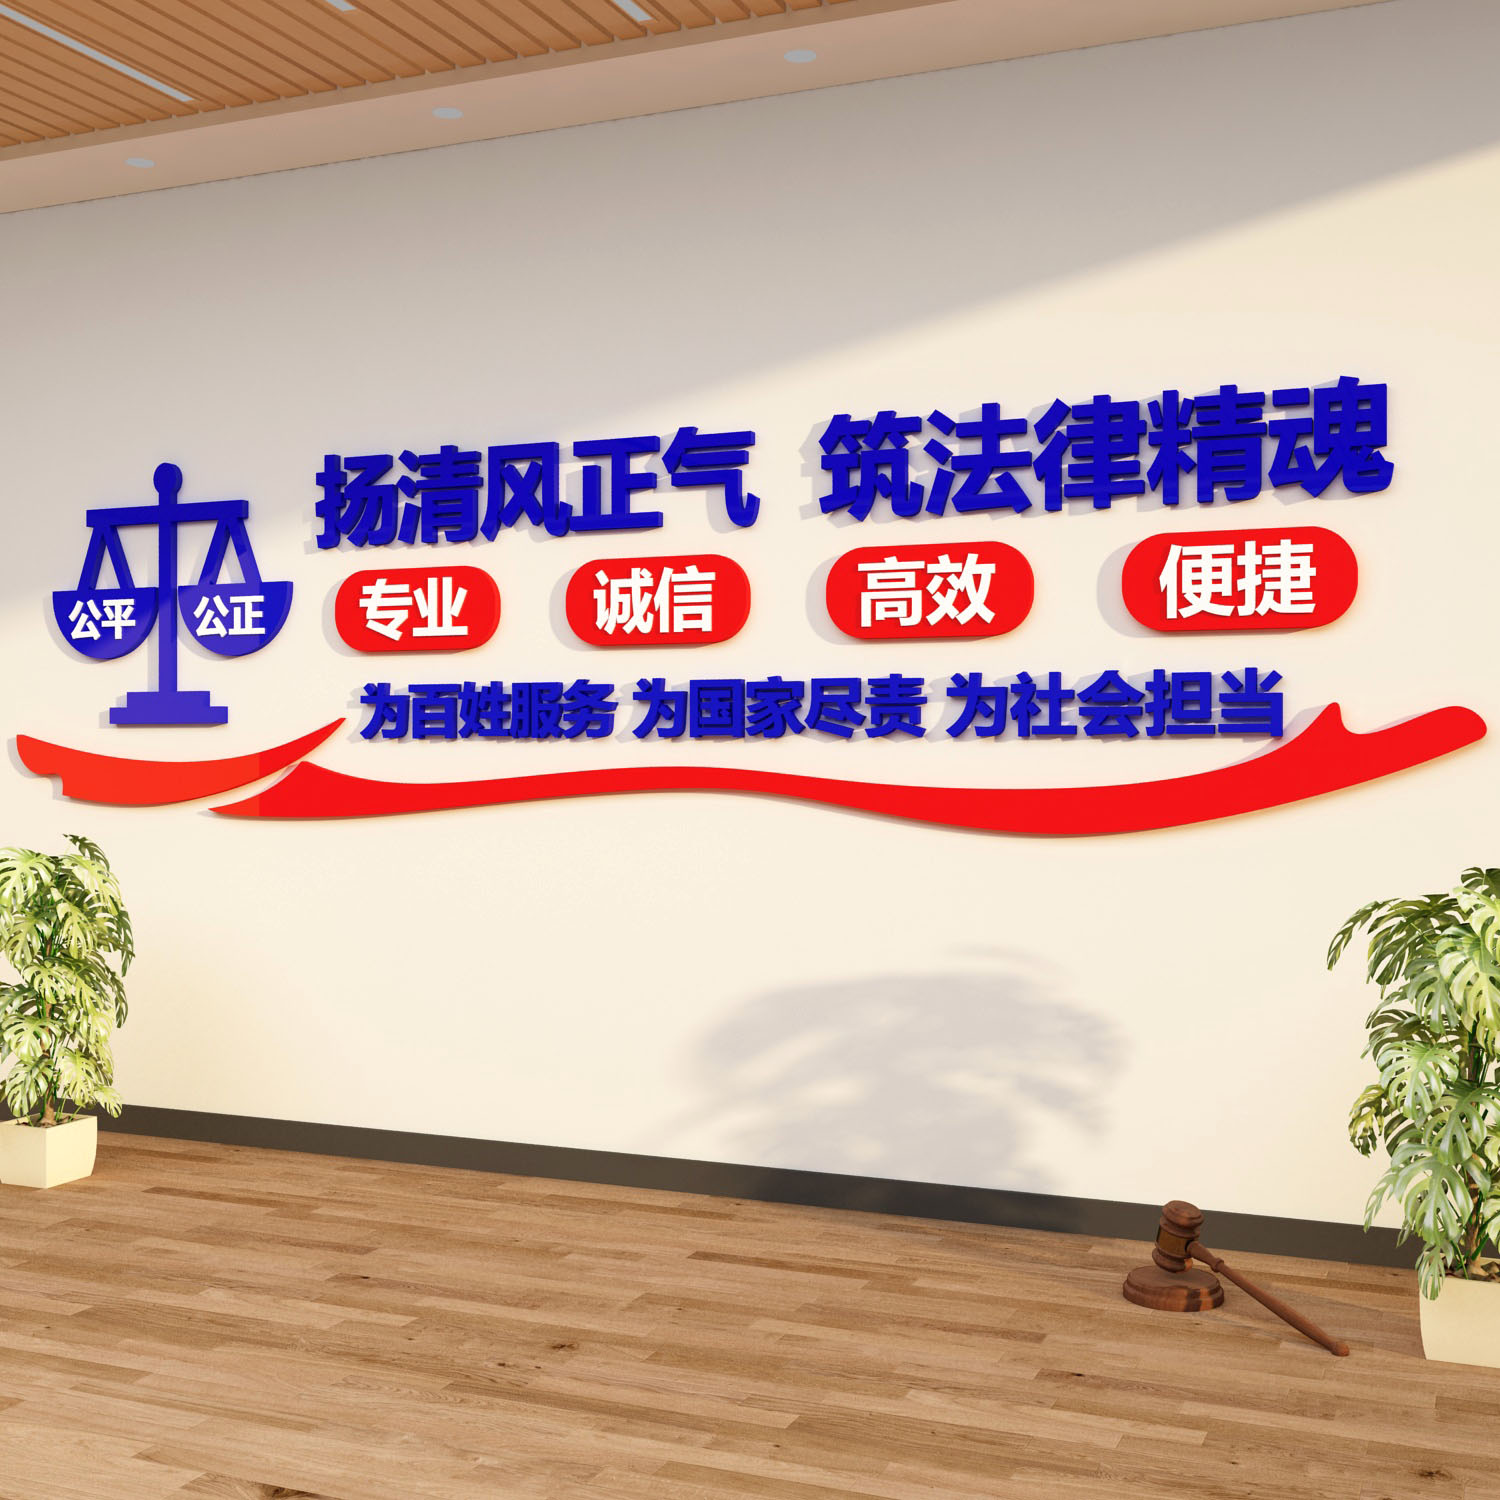 律师事务所文化墙法律援助社区法院司法为民装饰布置办公室公平正